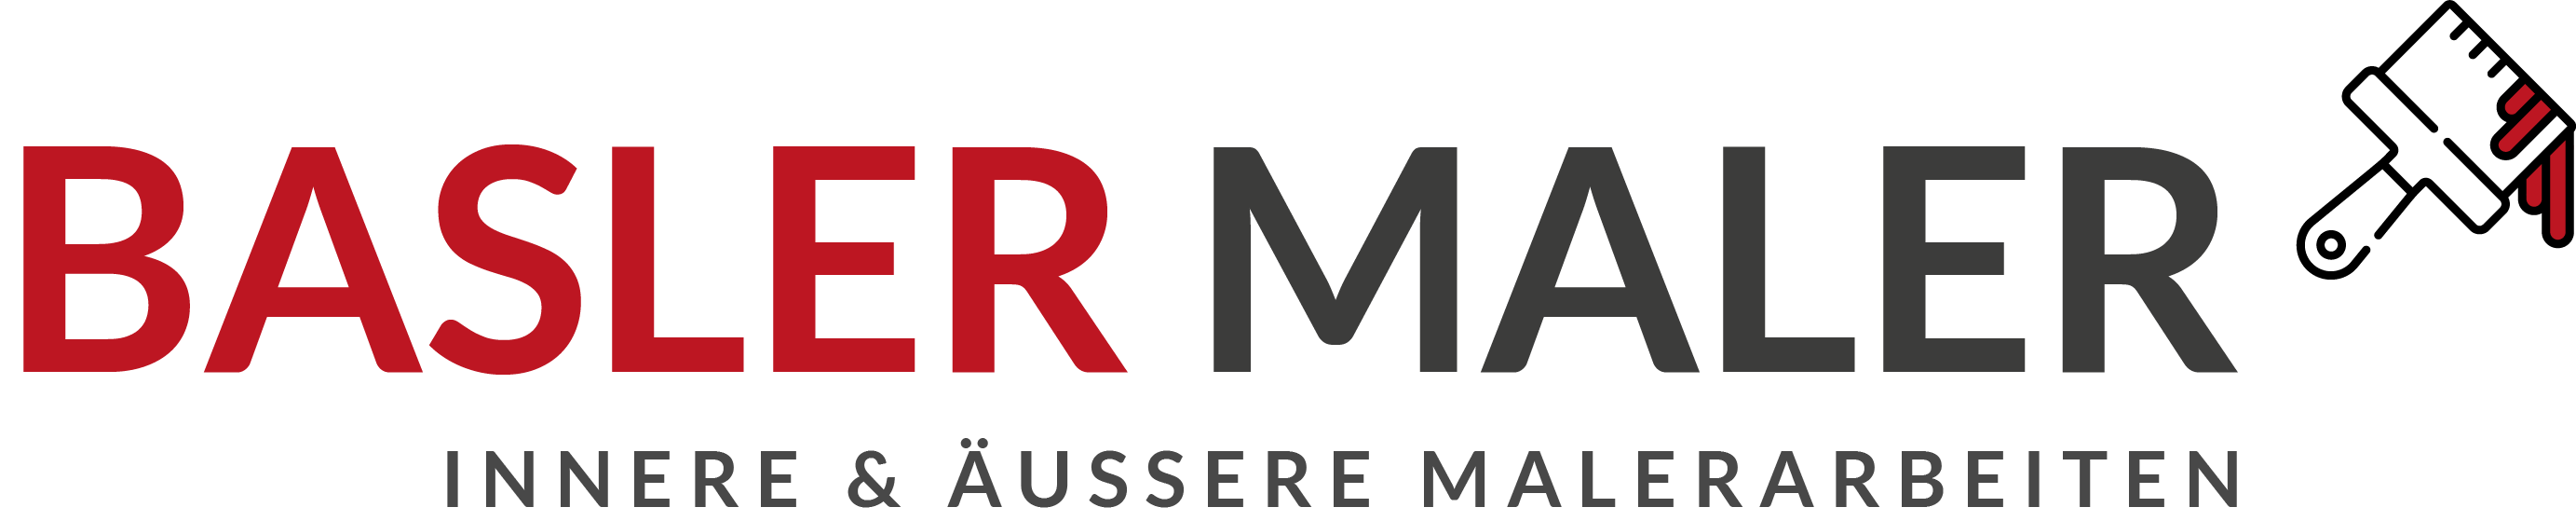 BLASER Maler  Logo